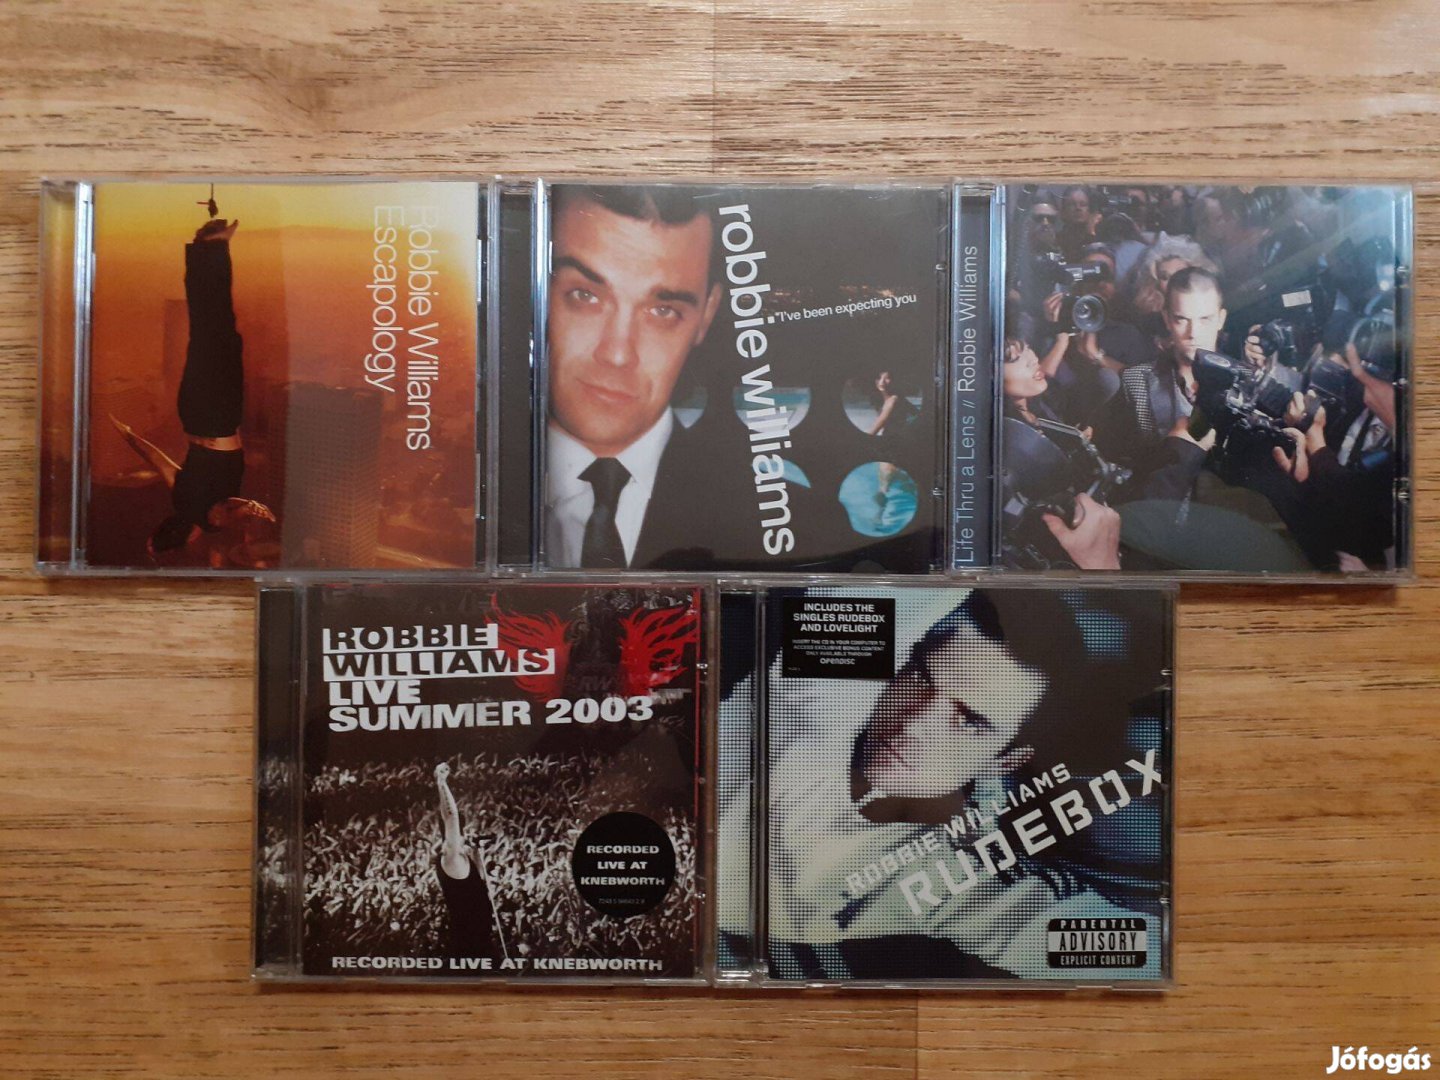 Robbie Williams (újszerű, Svájcban vásárolt) CD lemezek egy csomagban